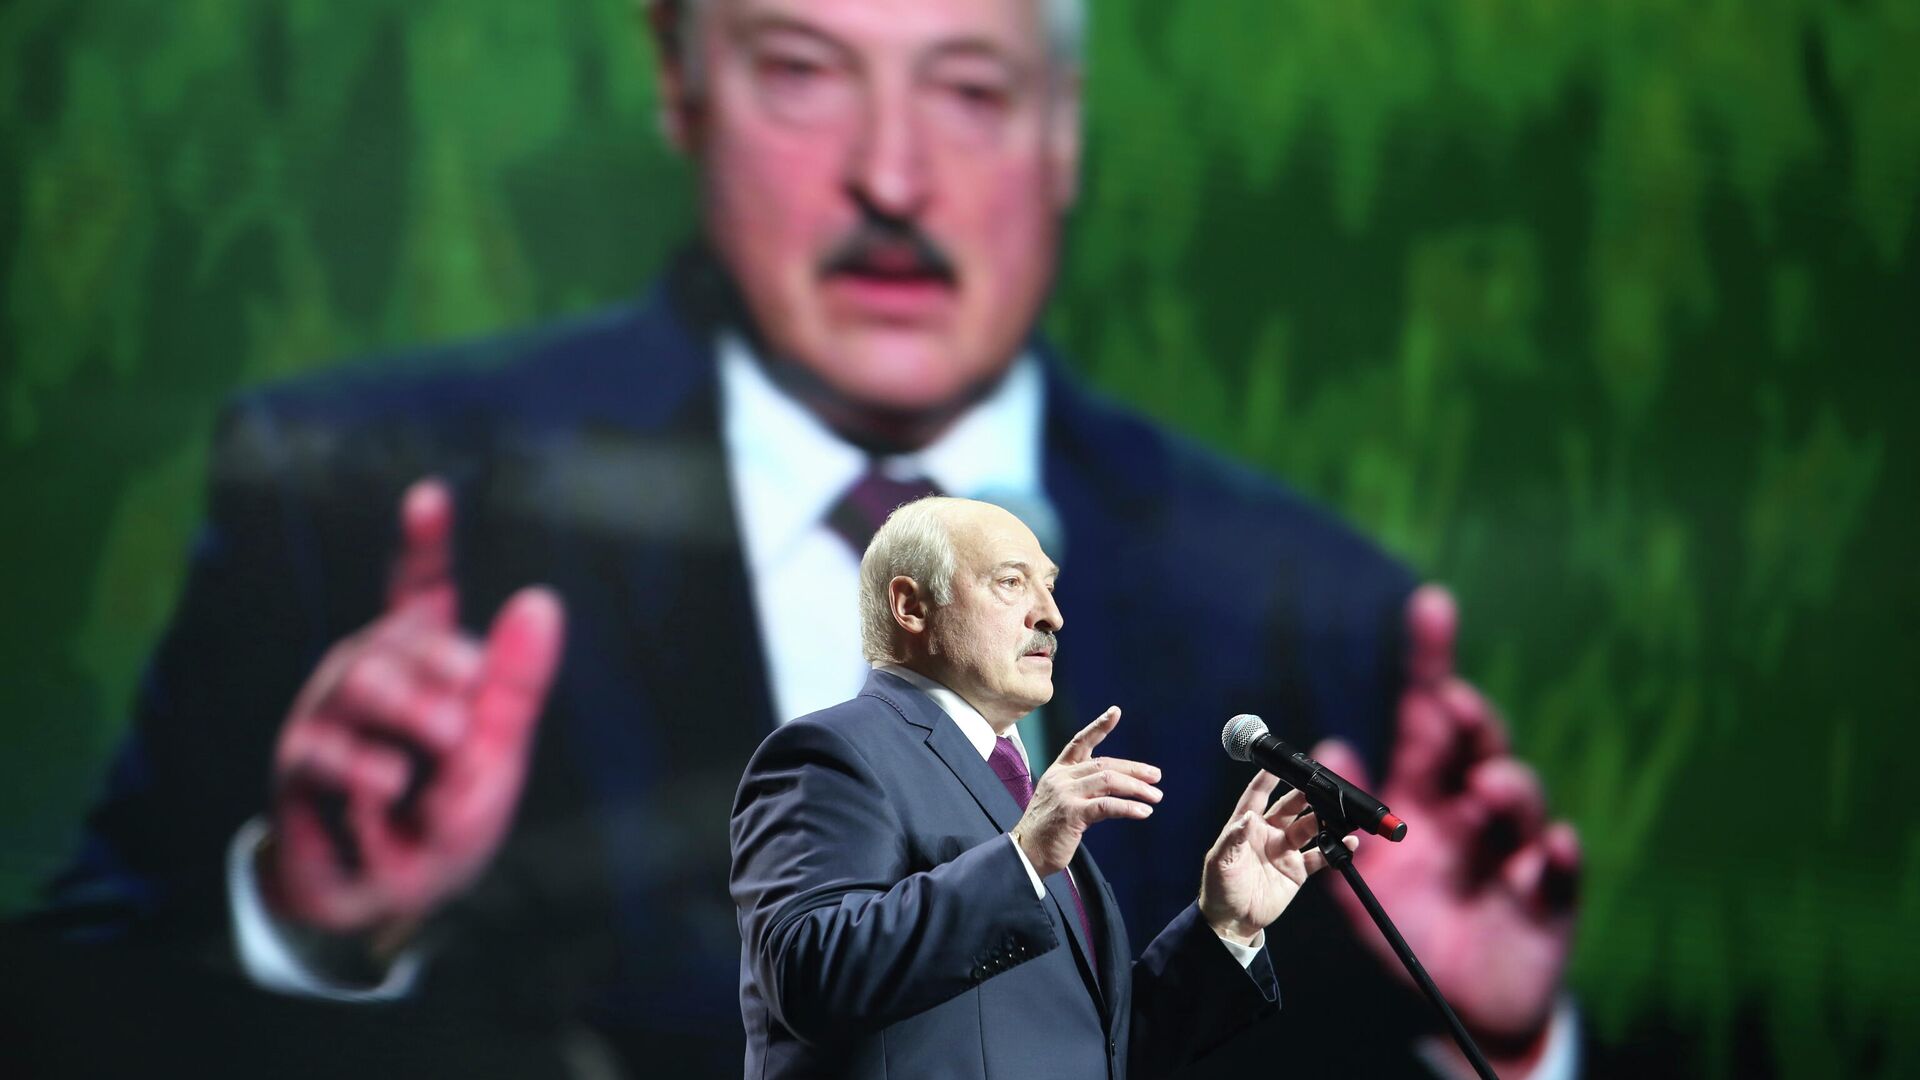 Президент Белоруссии Александр Лукашенко выступает на женском форуме в Минске. 17 сентября 2020 - РИА Новости, 1920, 09.10.2020